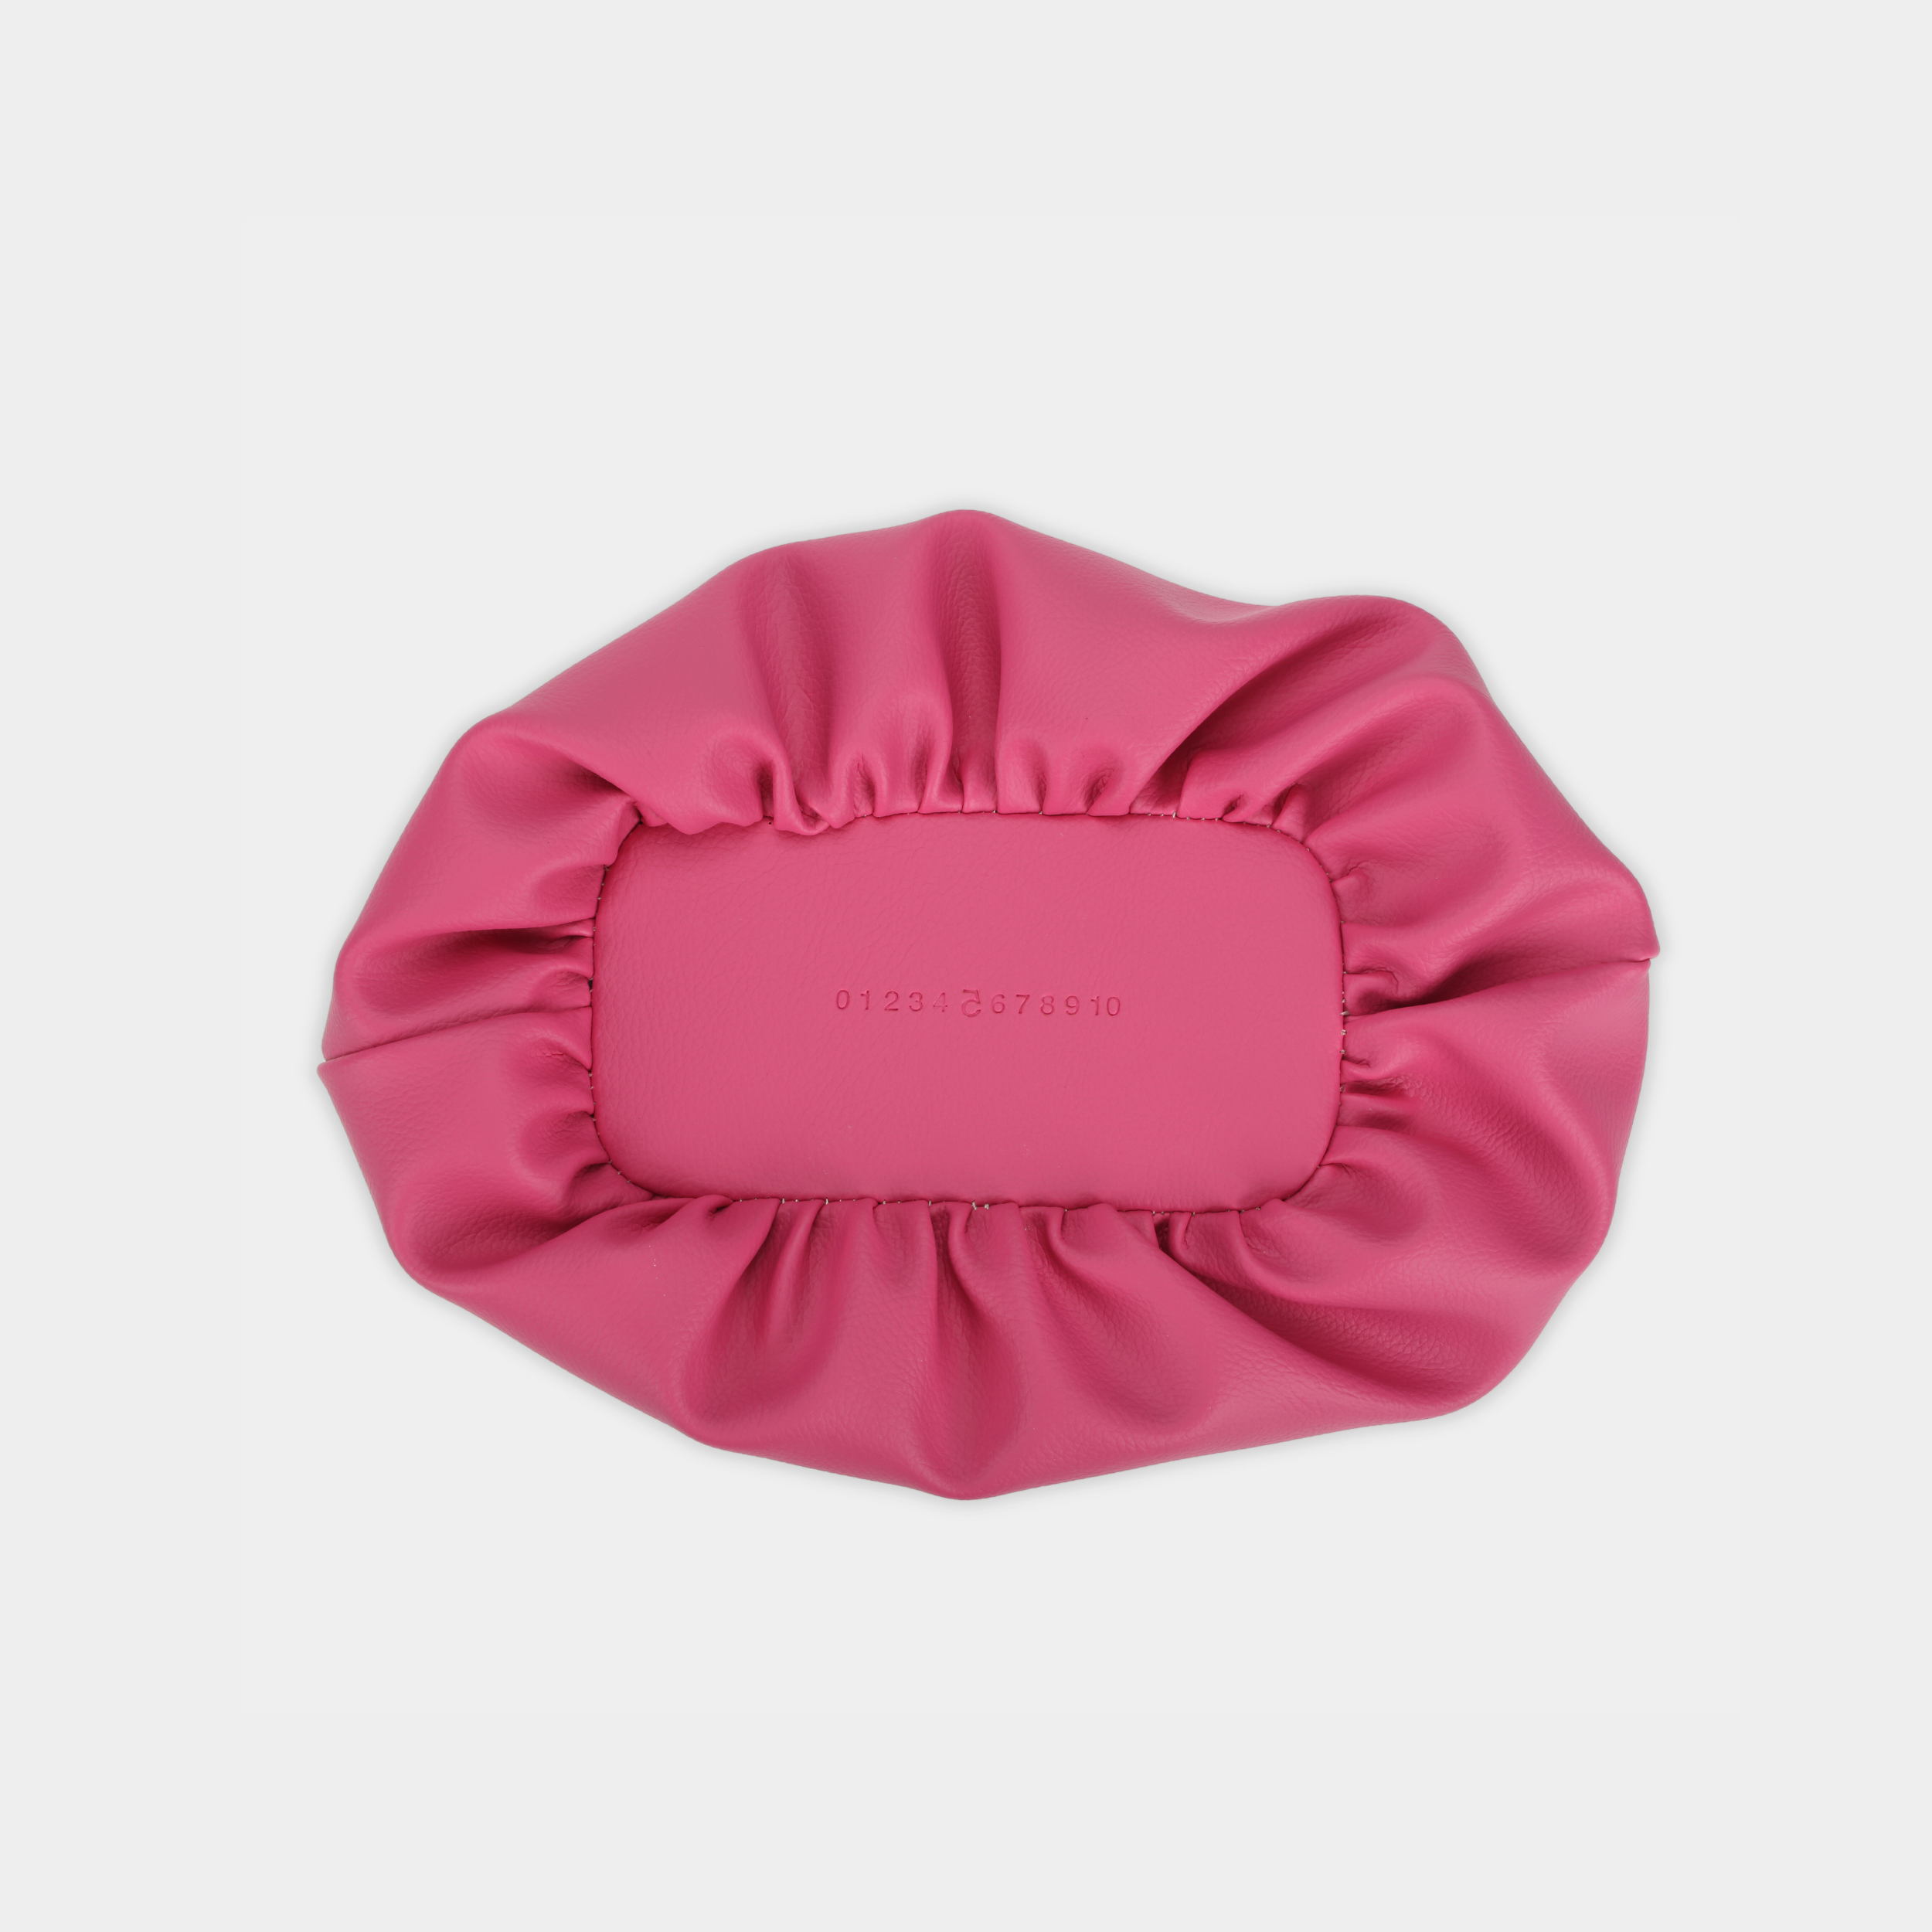 Túi xách MEDIUM FLOWER màu hồng - CHAUTFIFTH